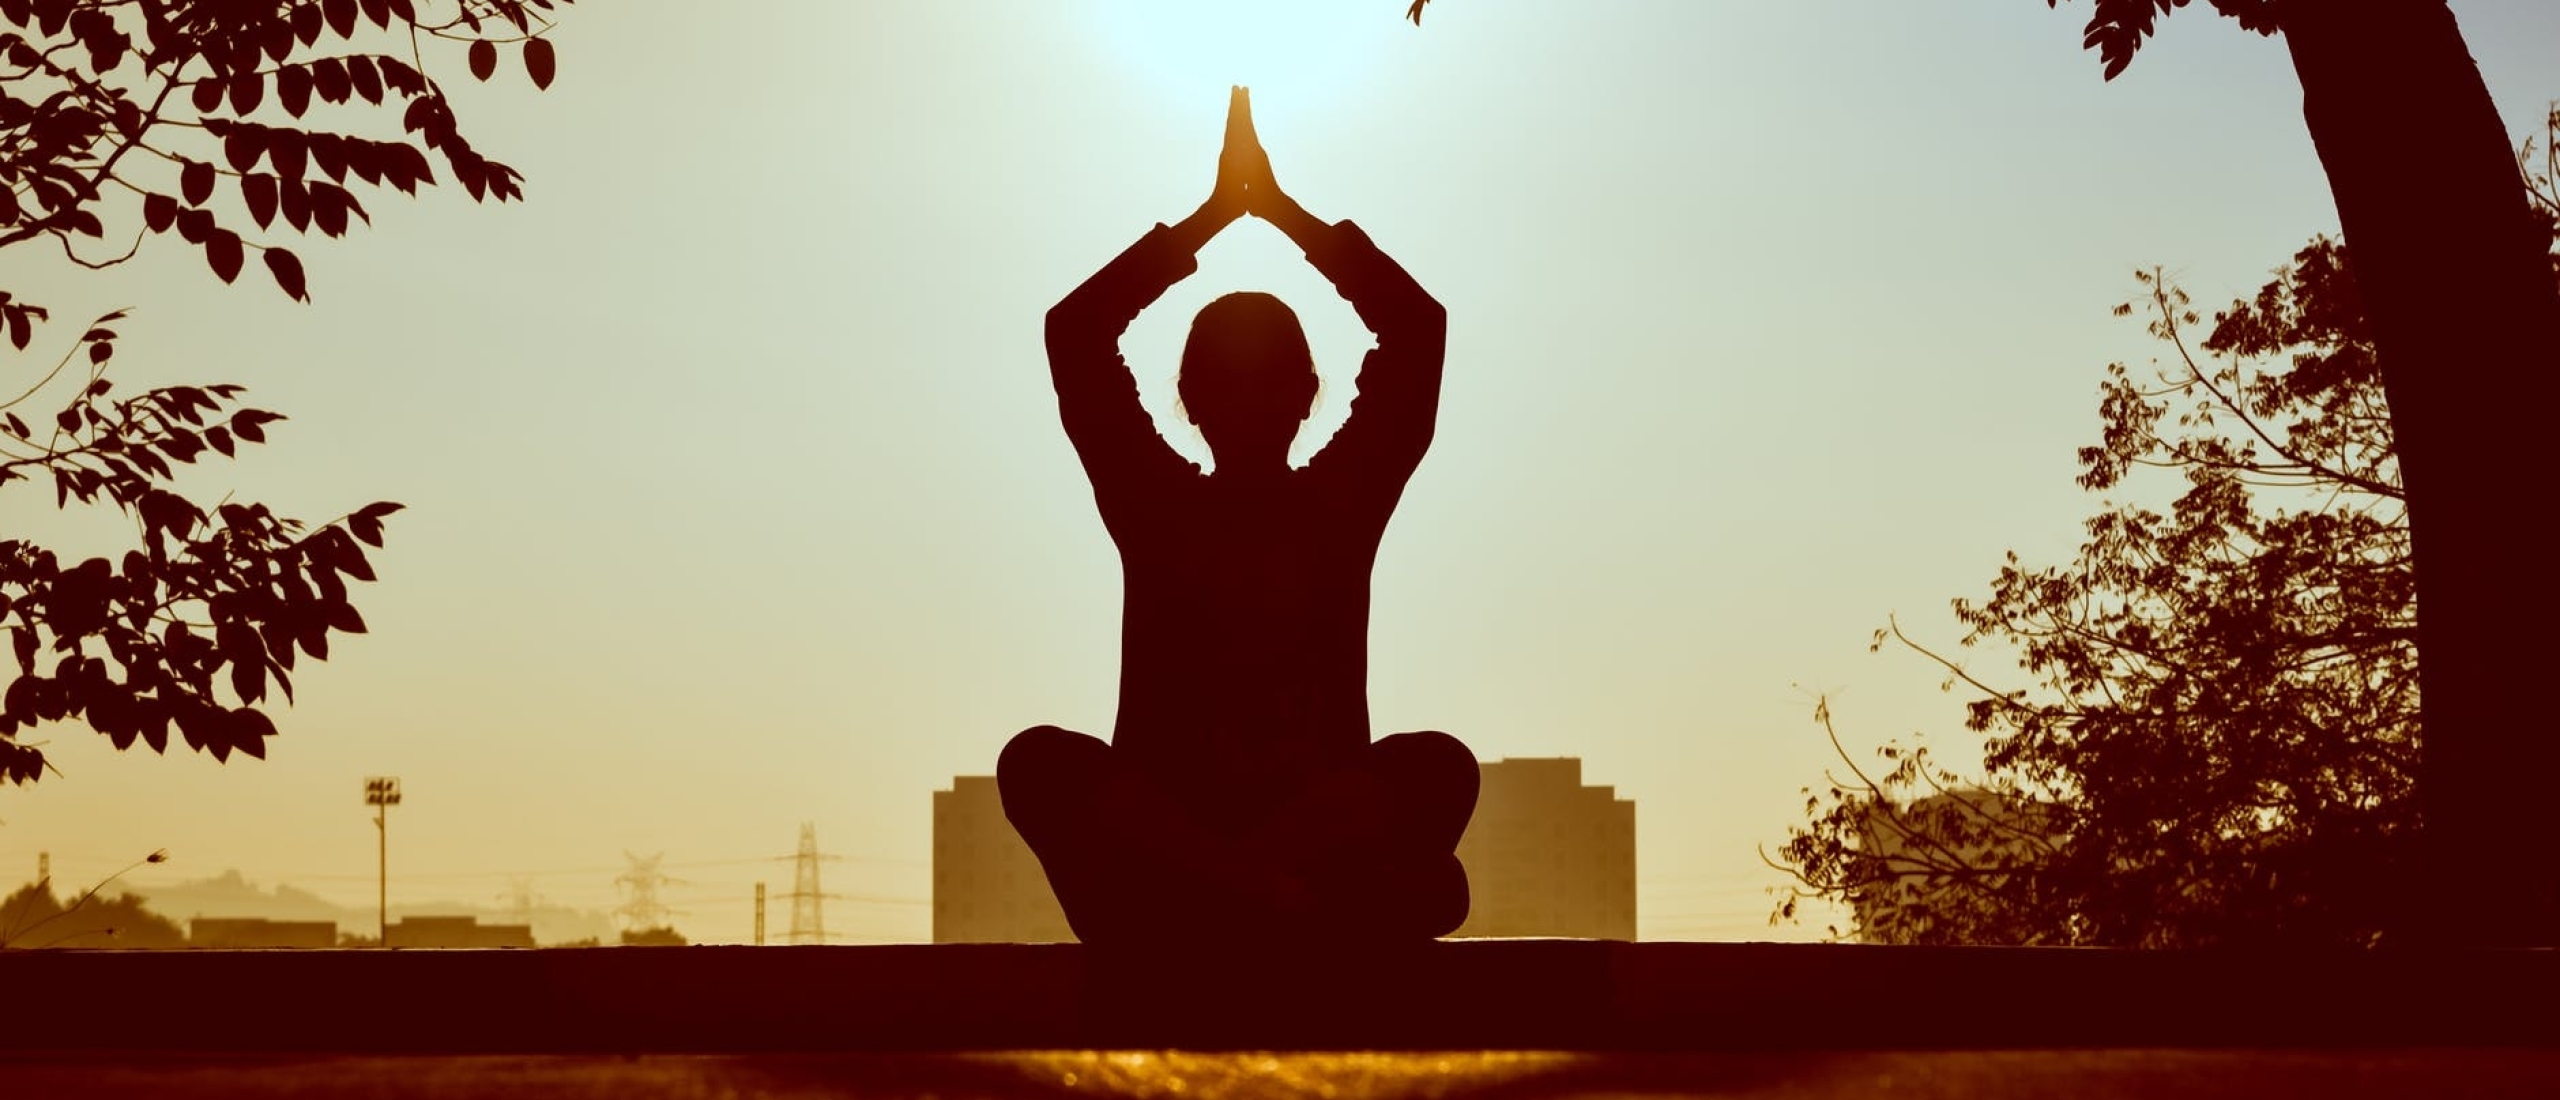 Mediteren: Zoveel meer dan alleen een moment van rust + gratis audio meditatie